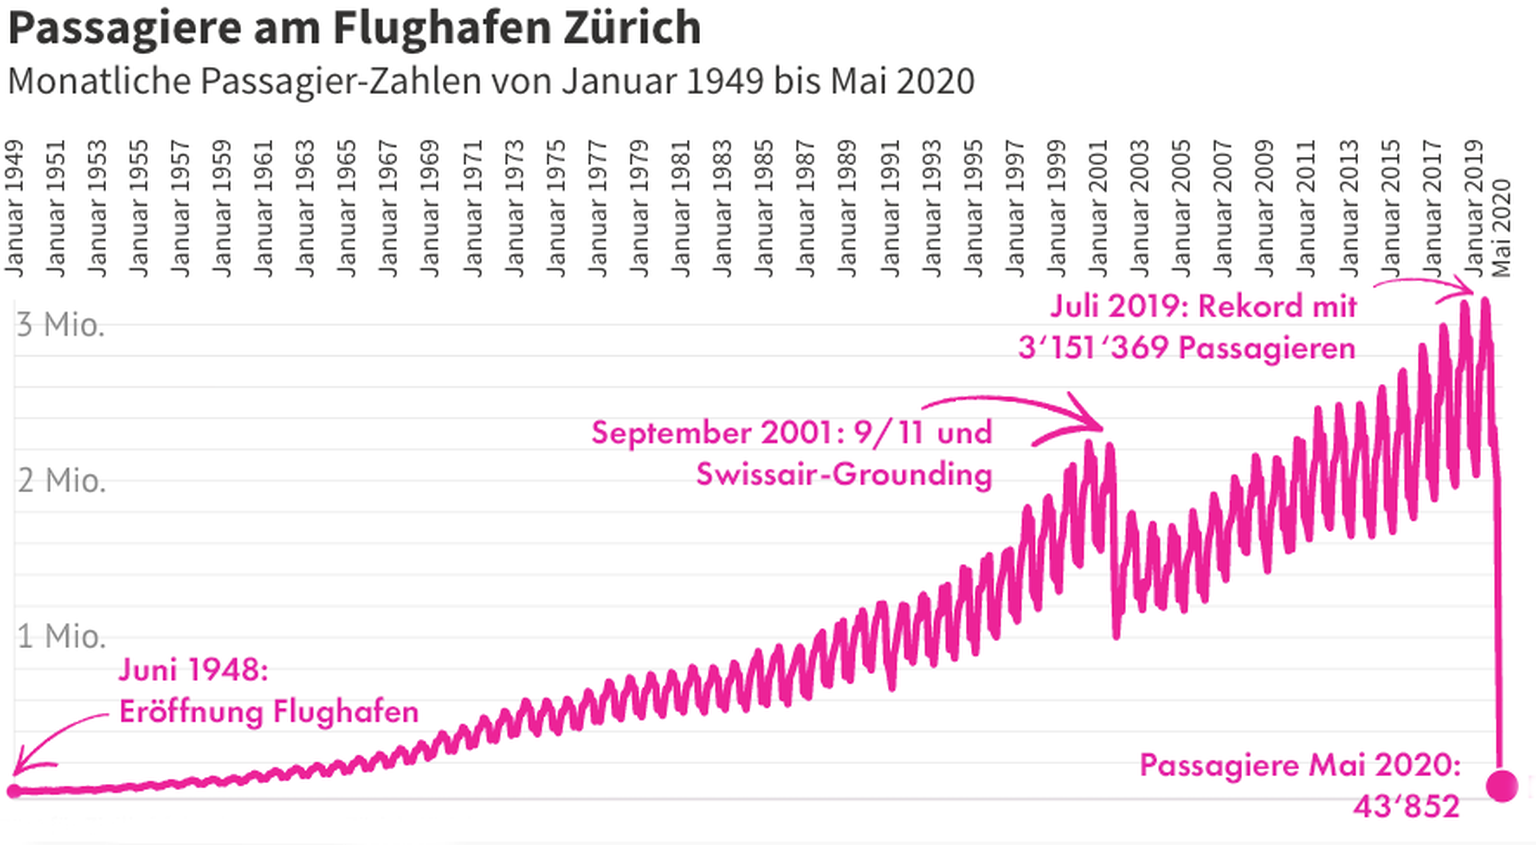 Flugverkehr am Flughafen Zürich: Monatliche Entwicklung der Passagierzahlen 1948 bis Mai 2020